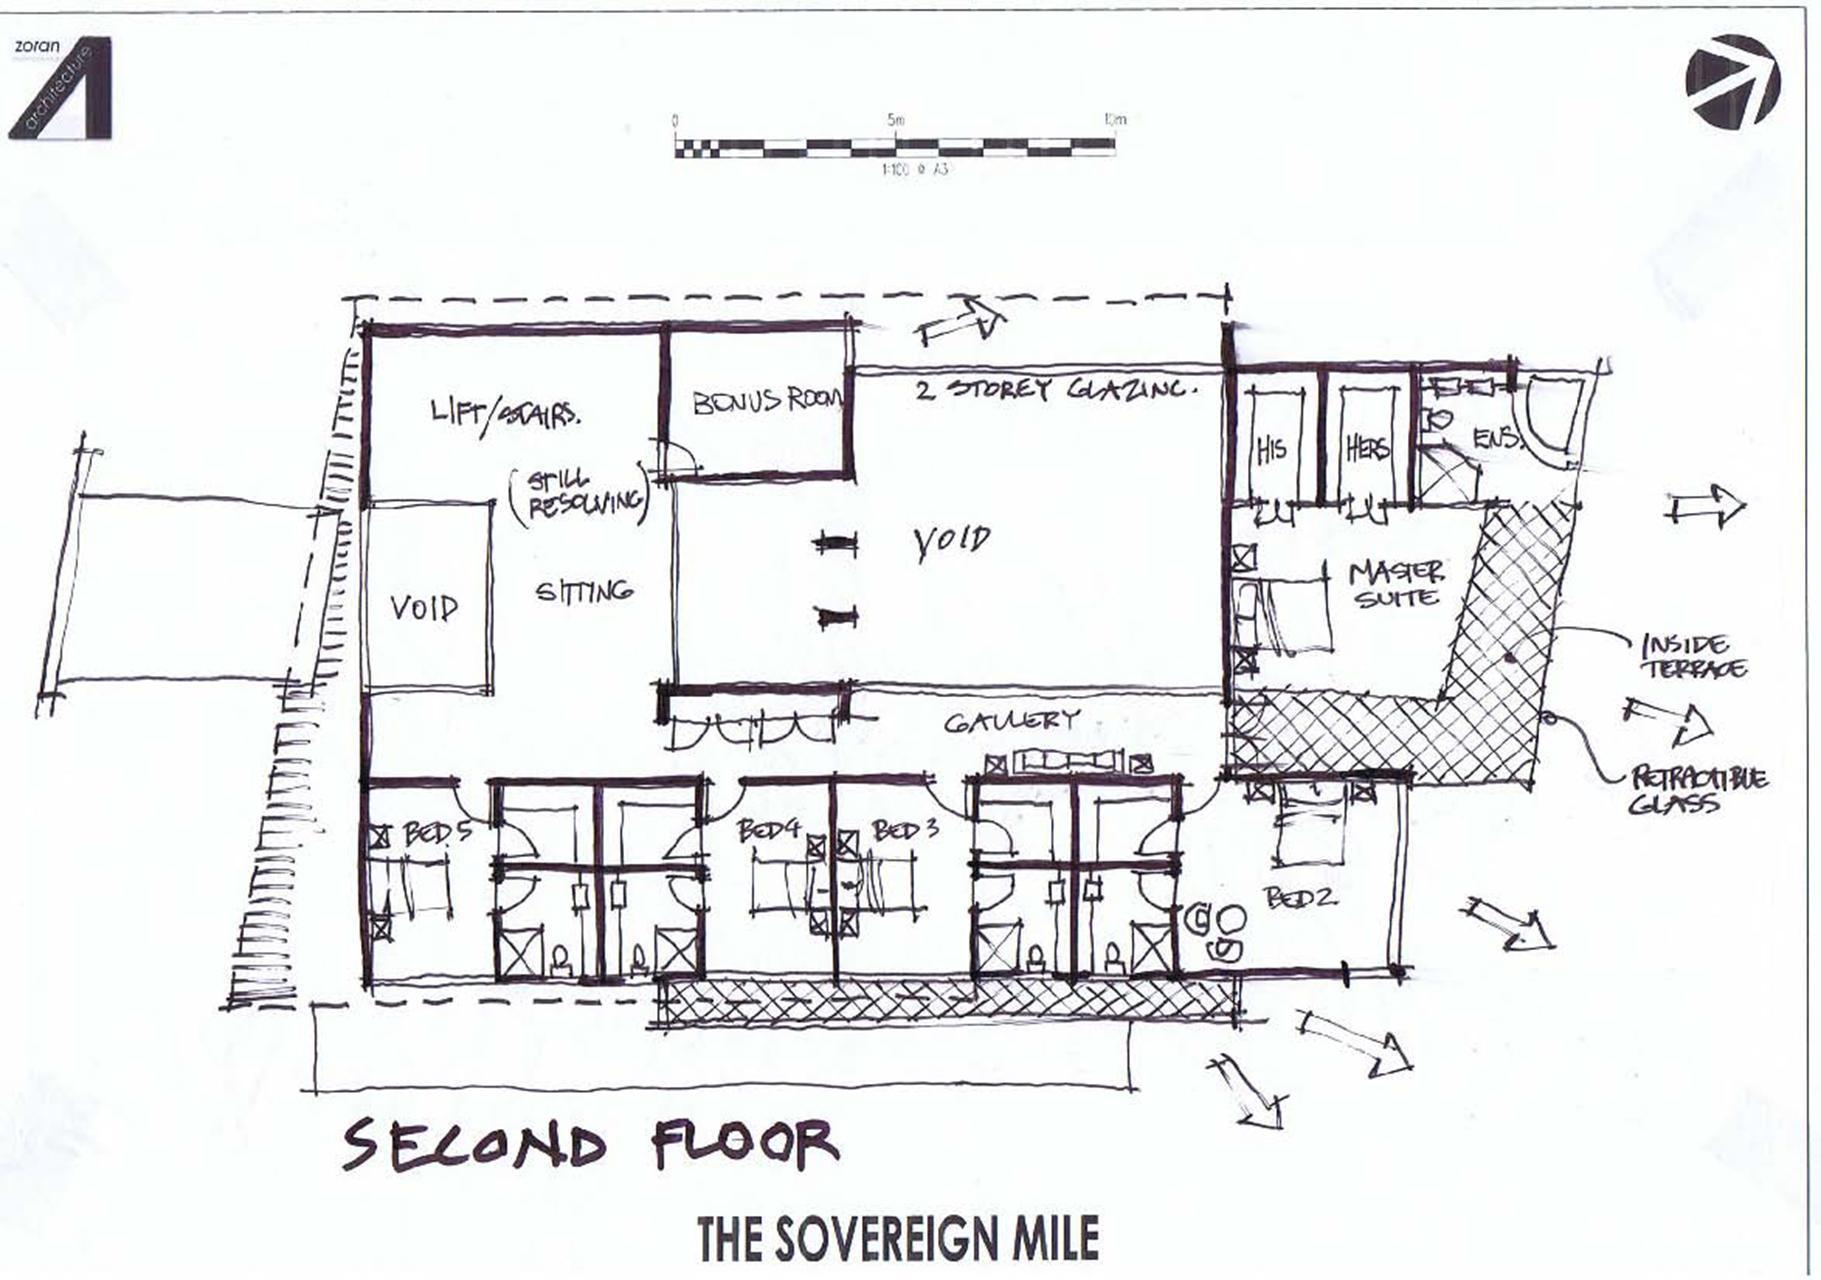 concept 1 - upper floor (level 2)